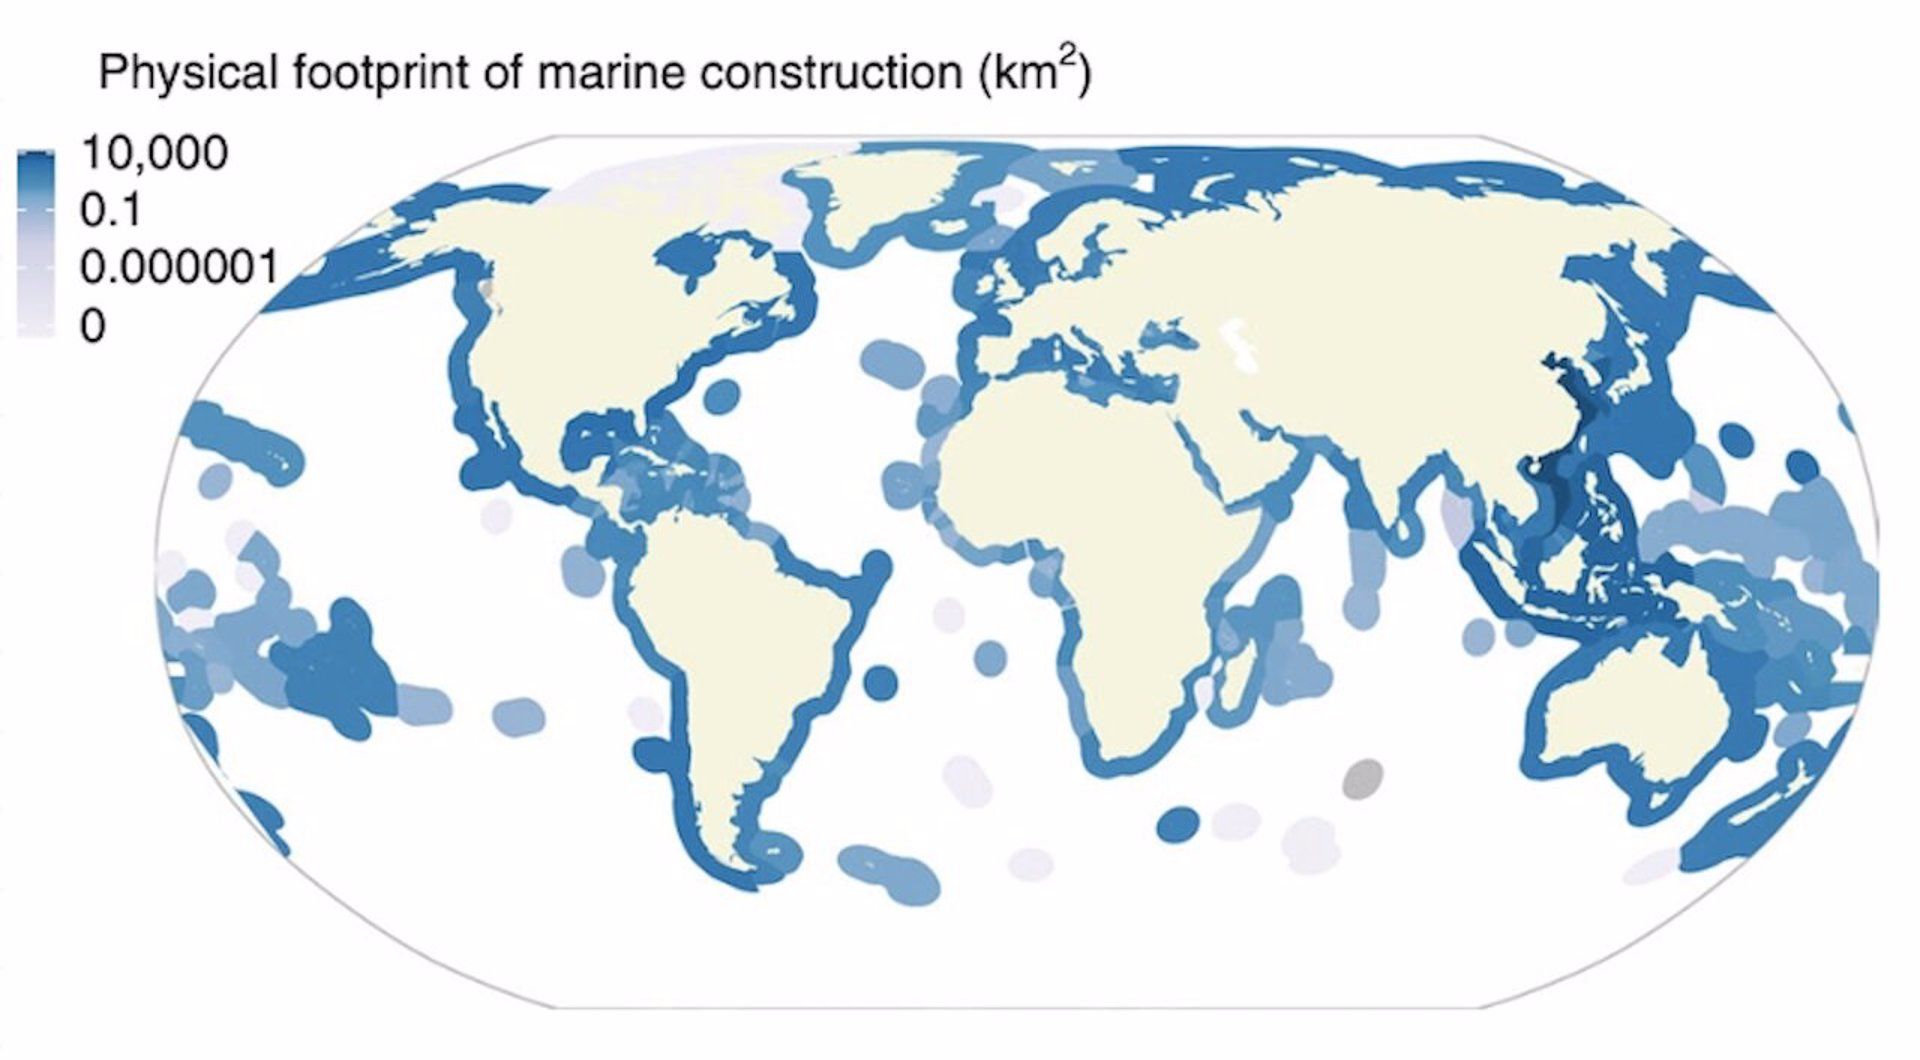 Mapa que muestra la huella física de la construcción de los océanos a nivel mundial / Foto: EP